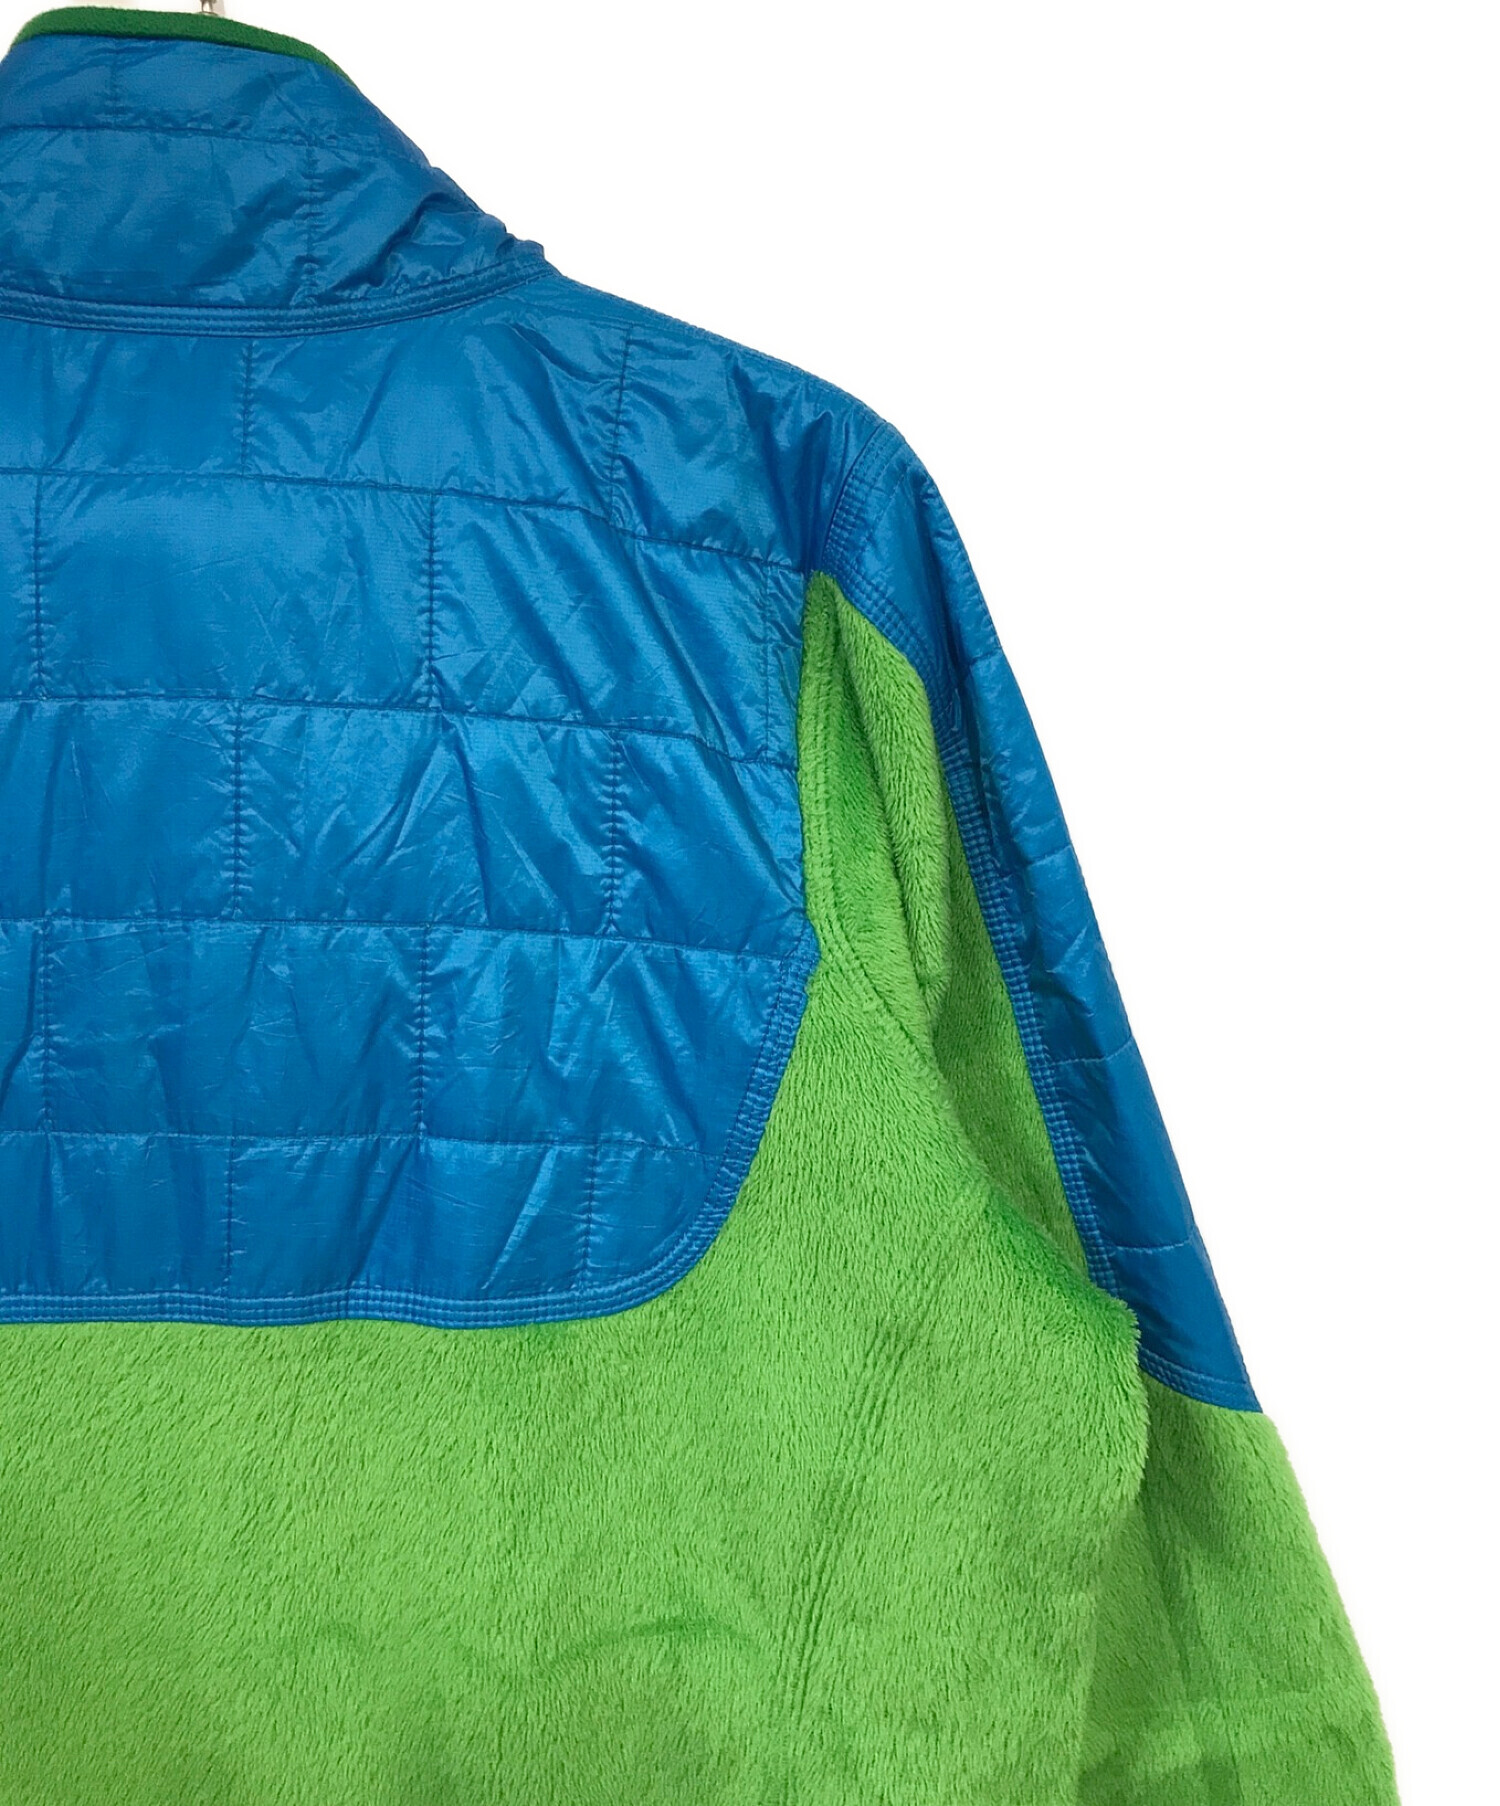 Patagonia (パタゴニア) ナノパフハイブリッドジャケット ブルー×グリーン サイズ:M